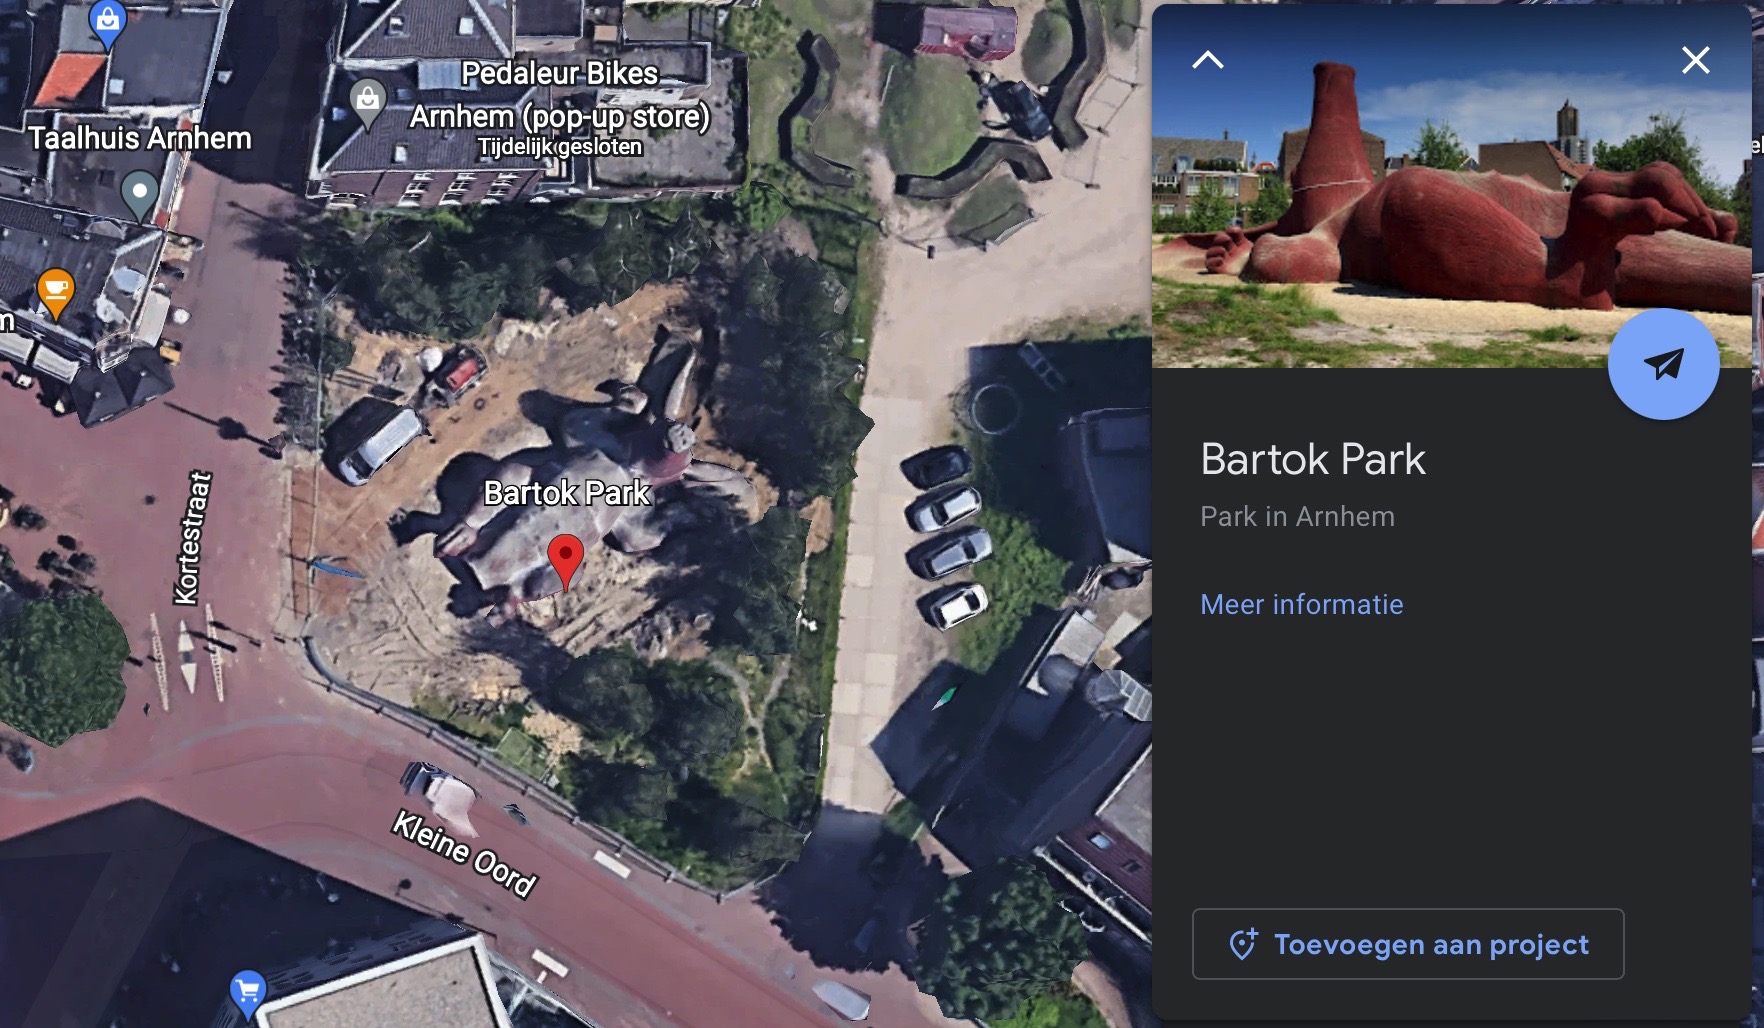 Bartok_Park_Arnhem.jpg